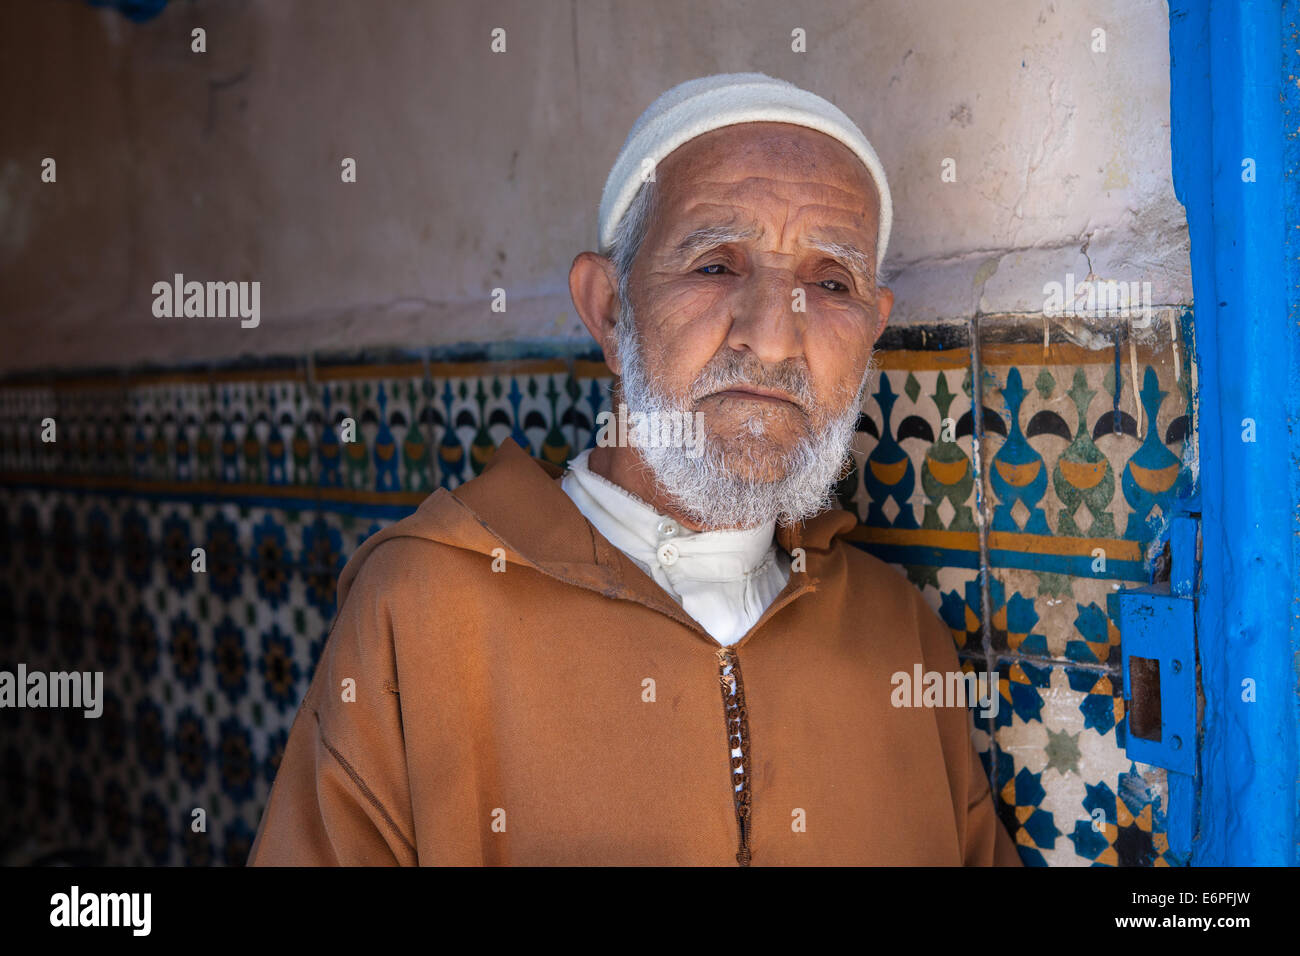 Ancien musulman, homme, vêtu d'une djellaba traditionnelle, debout dans une porte dans l'ancienne médina d'Essaouira, Maroc. Parution du modèle. Banque D'Images